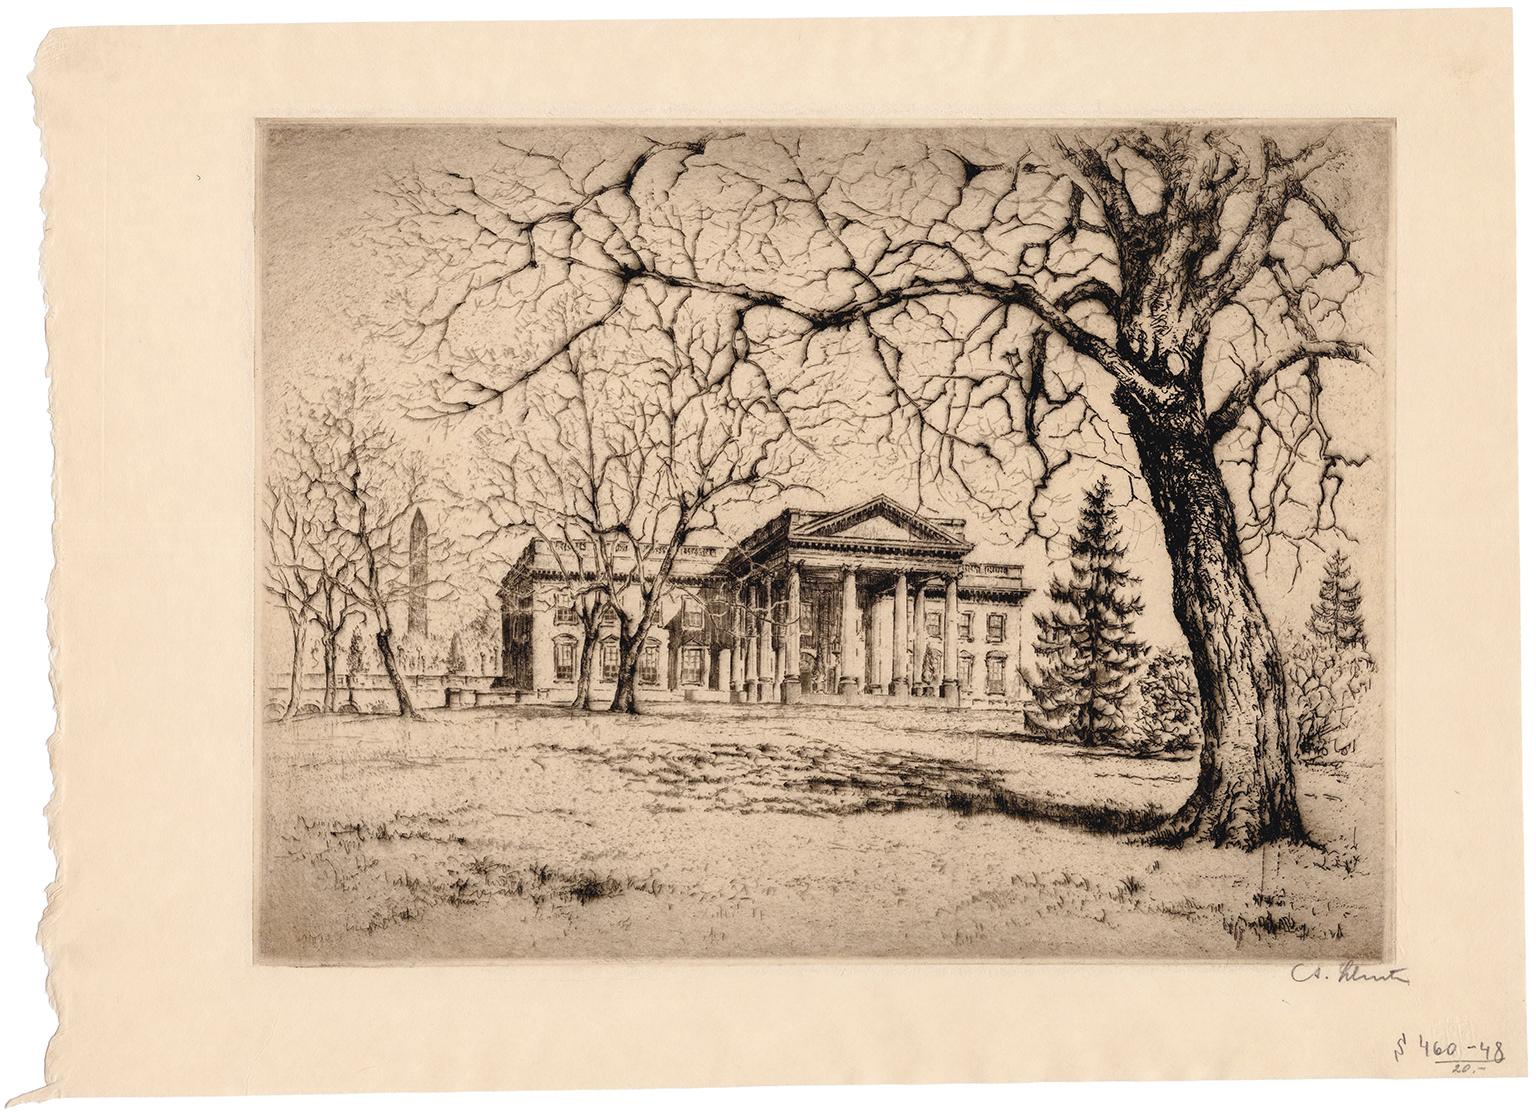 'The White House' — 1920s Realism, Washington D.C. - Print by Anton Schutz